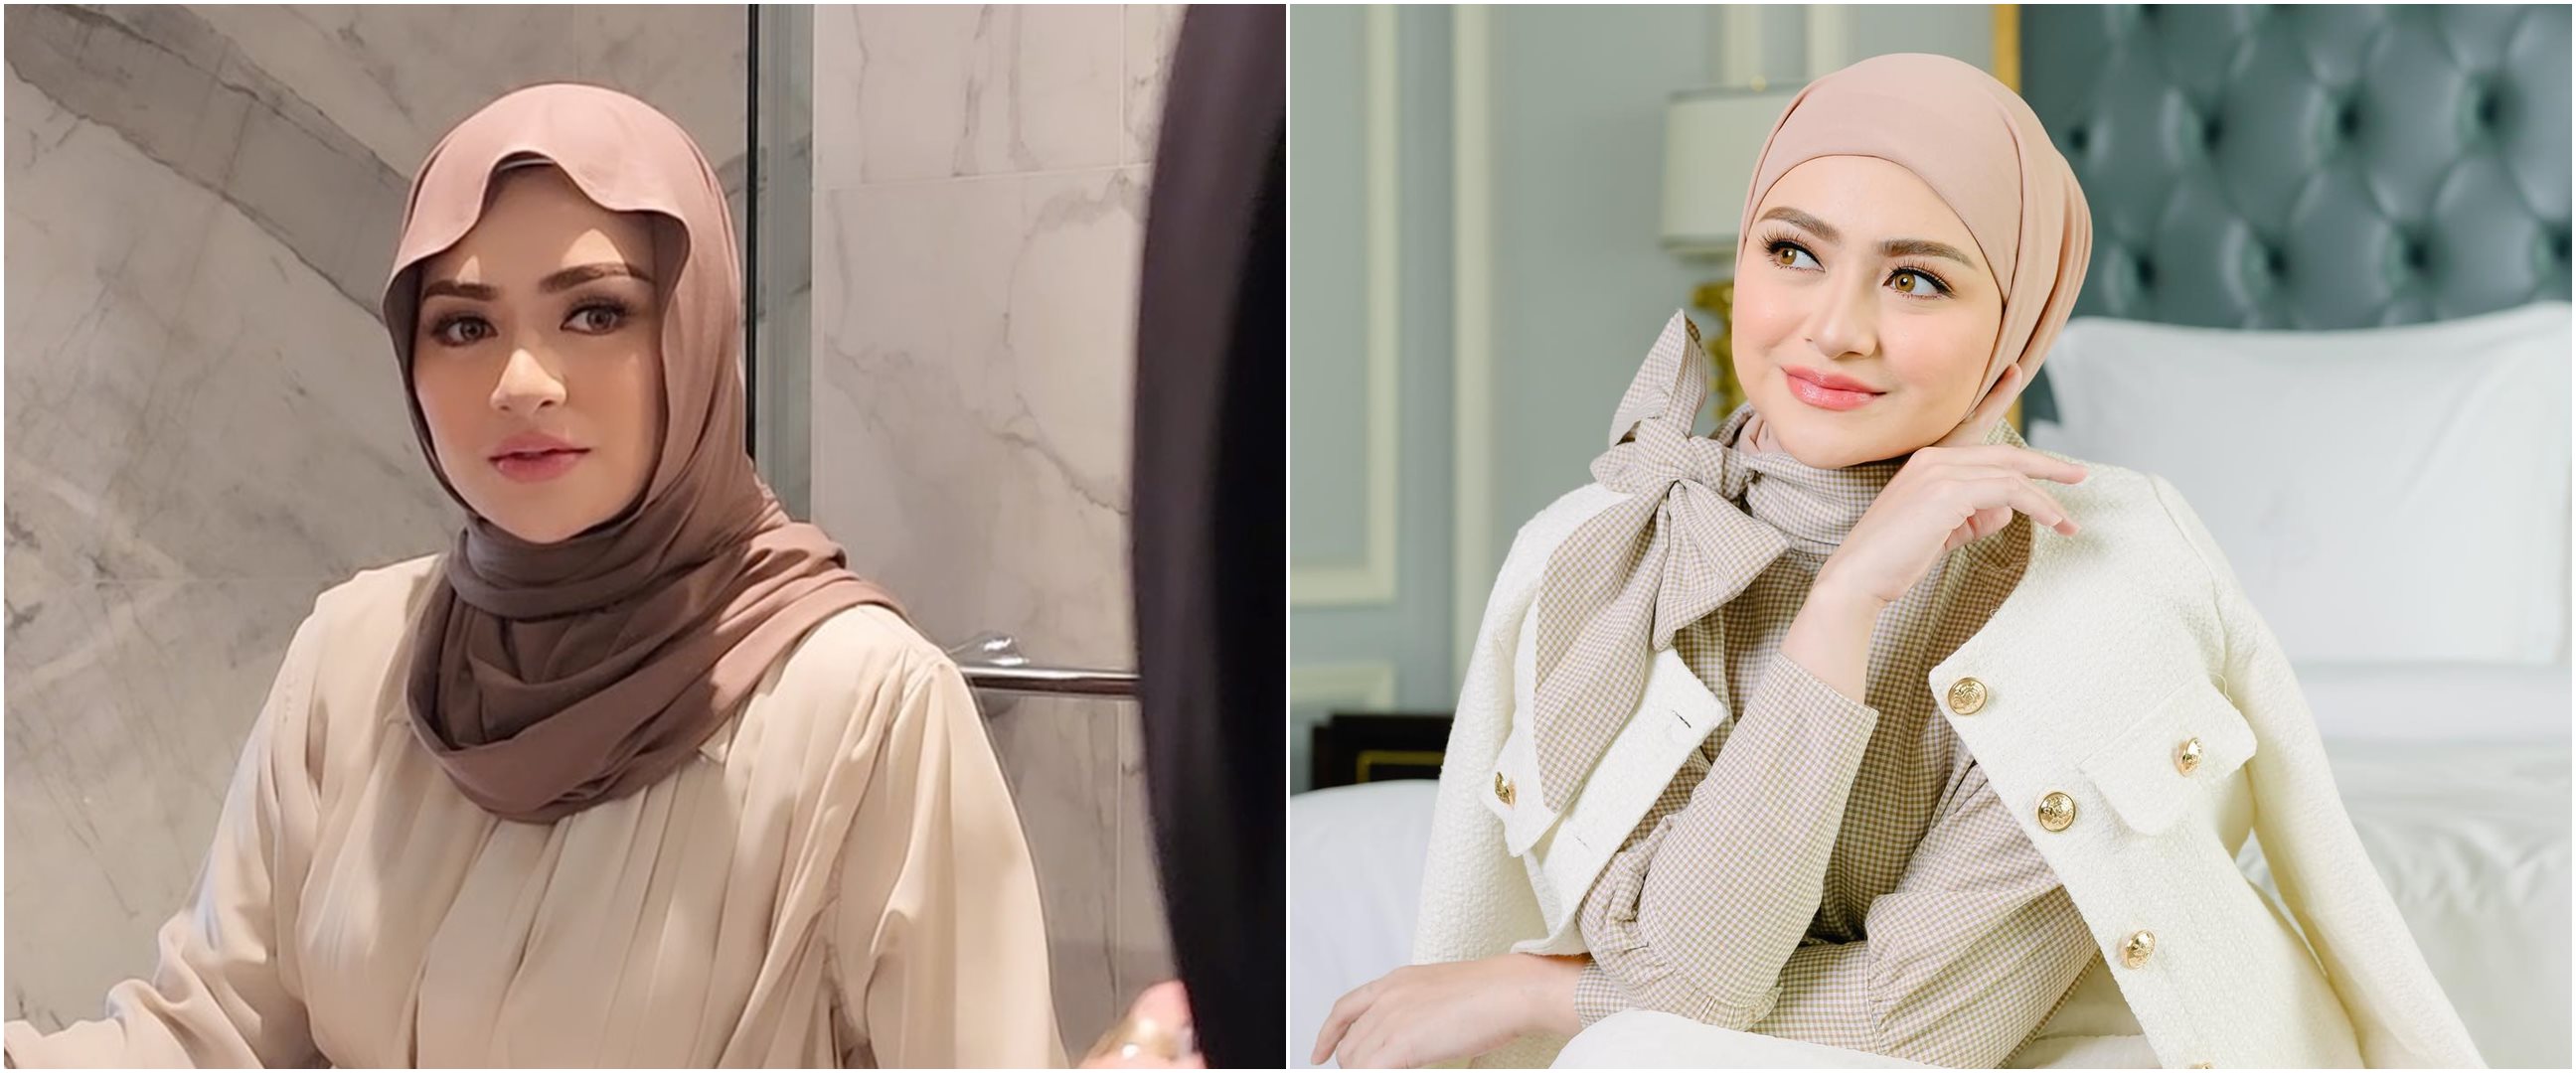 7 Potret terbaru Nathalie Holscher usai lepas hijab, pamer rambut panjang